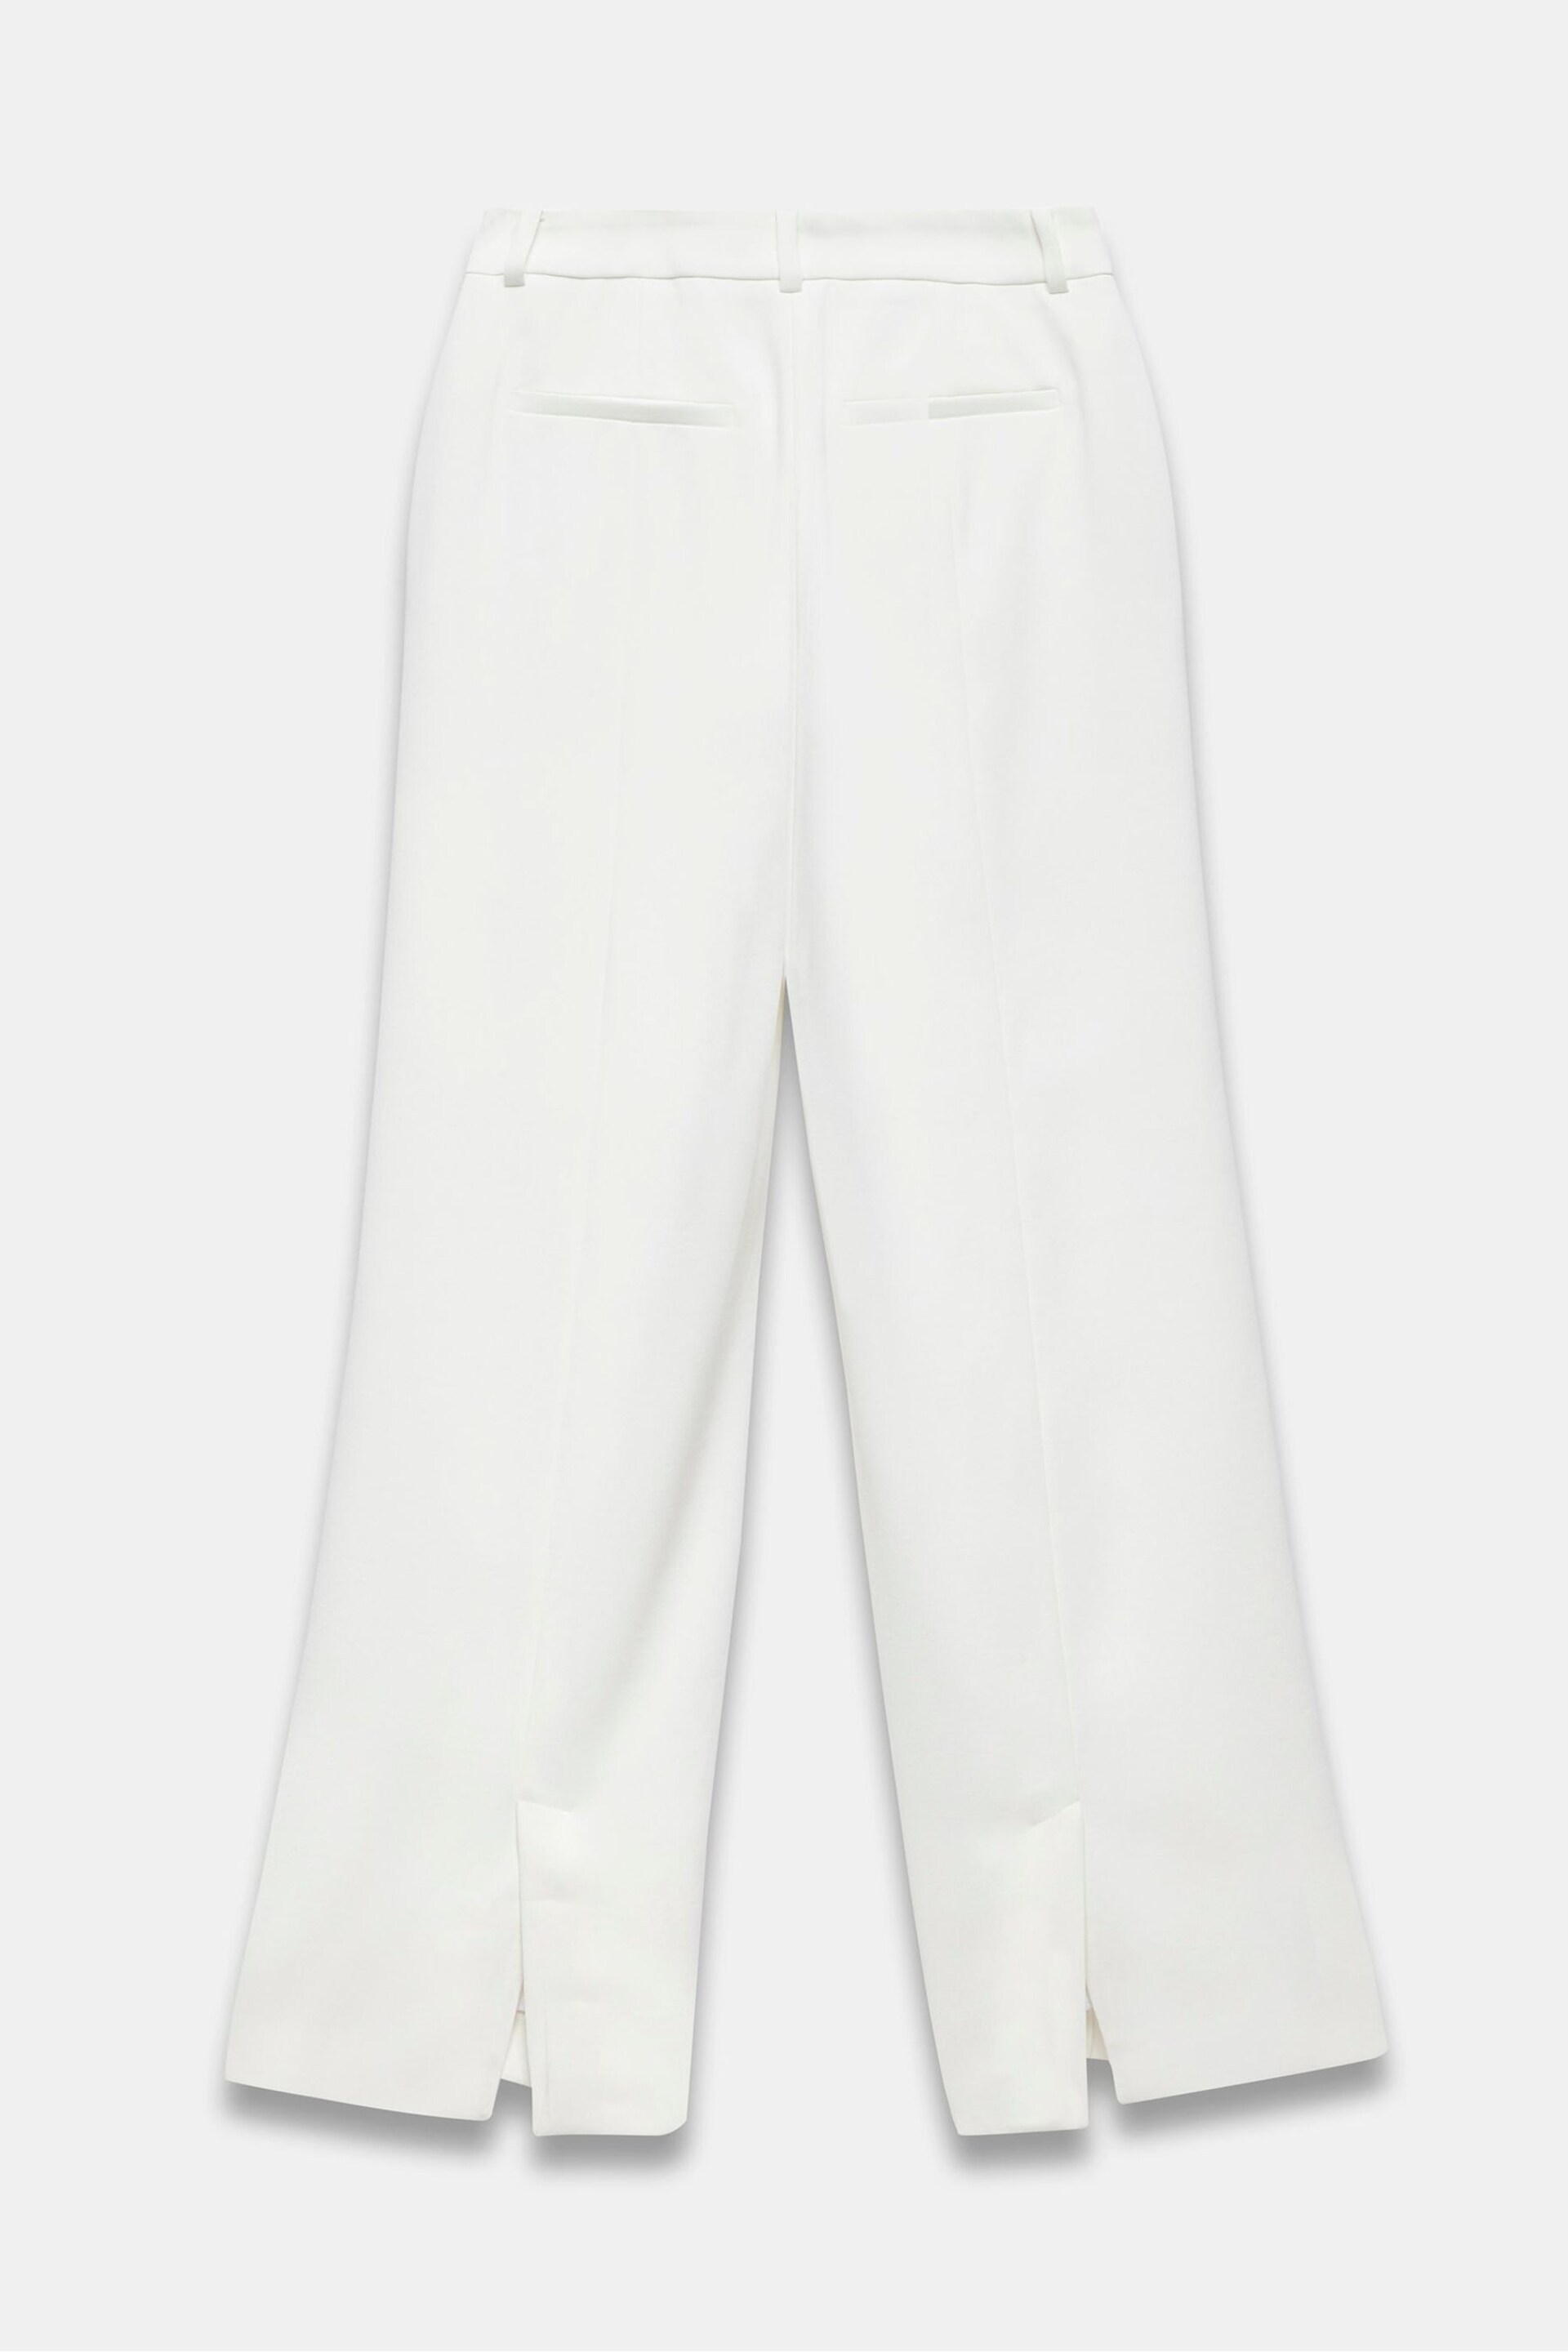 Mint Velvet White Split Hem Flared Trousers - Image 4 of 4